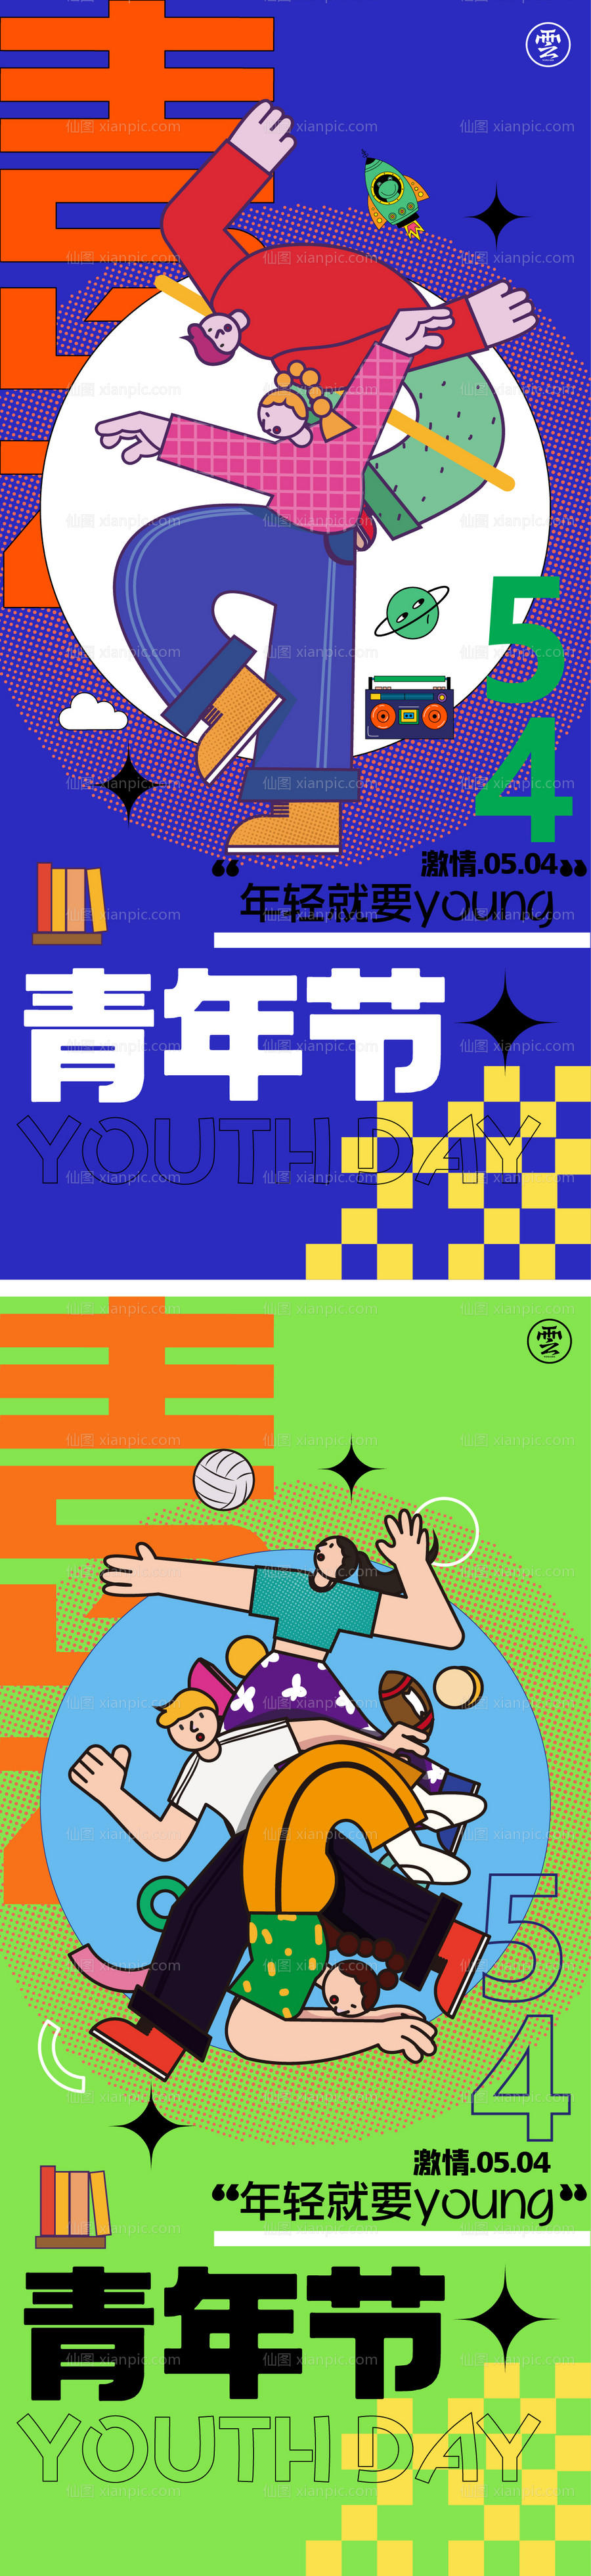 素材乐-青年节励志系列海报